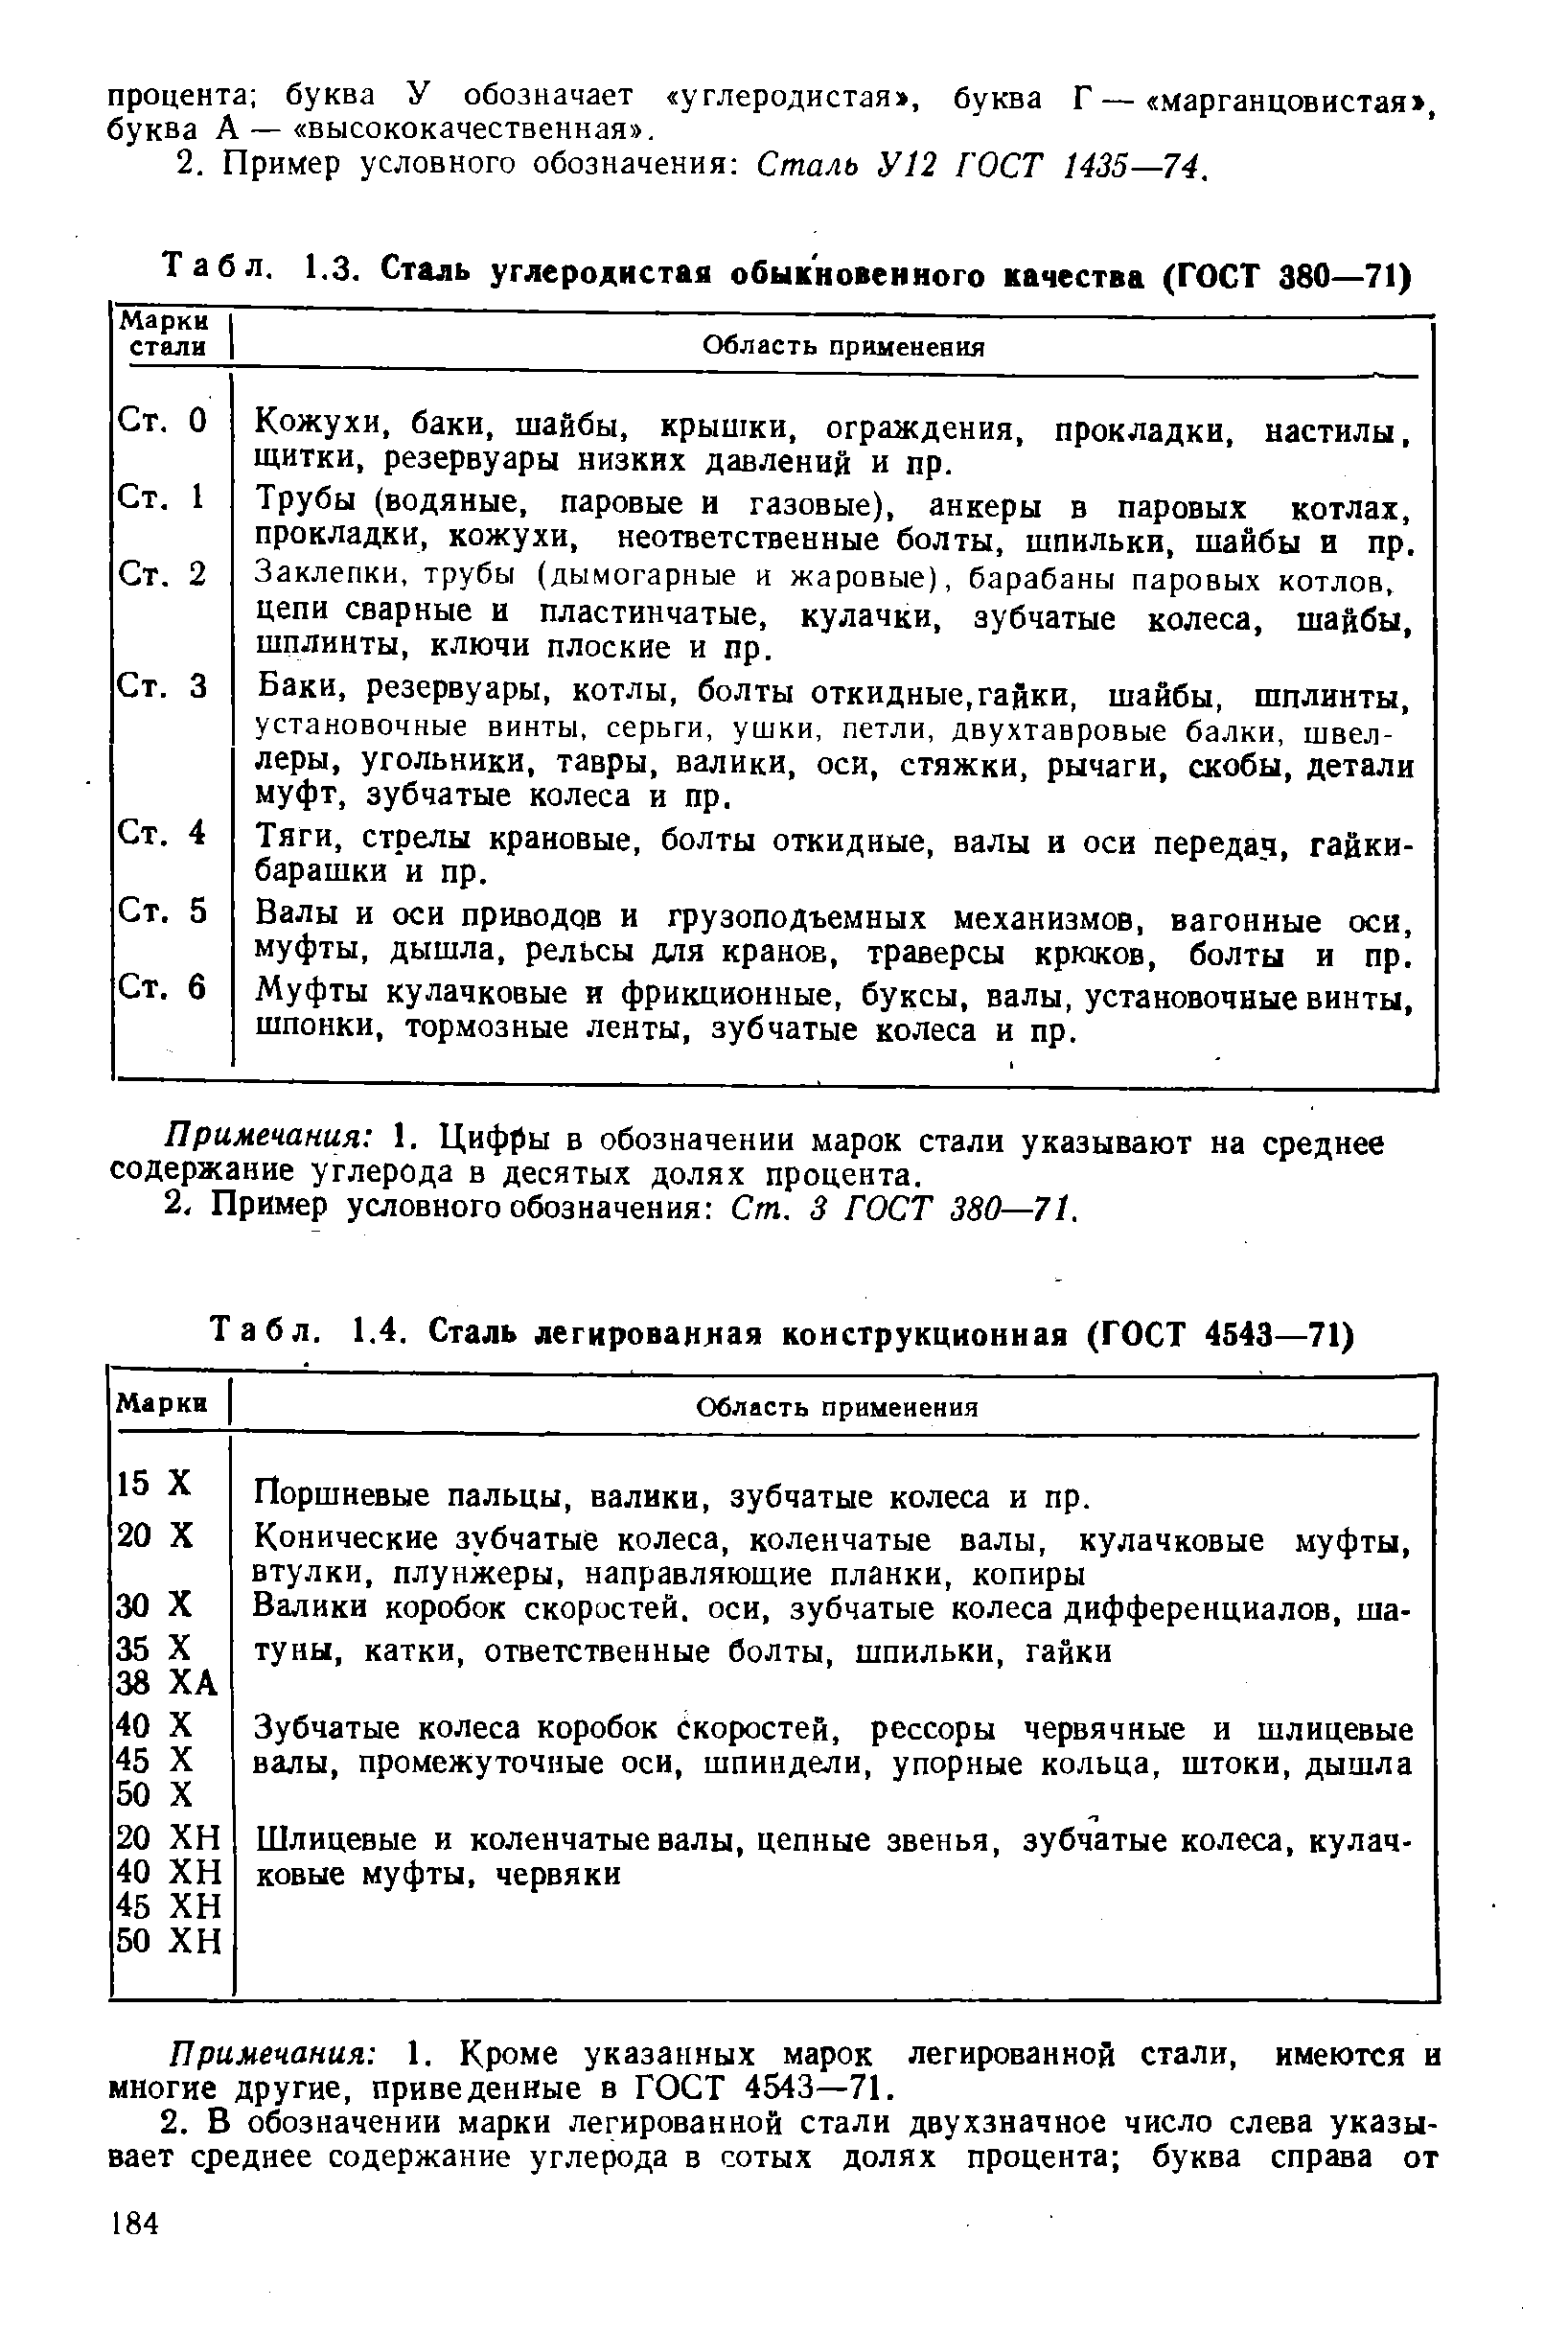 Табл. 1.4. Сталь легированная конструкционная (ГОСТ 4543—71)